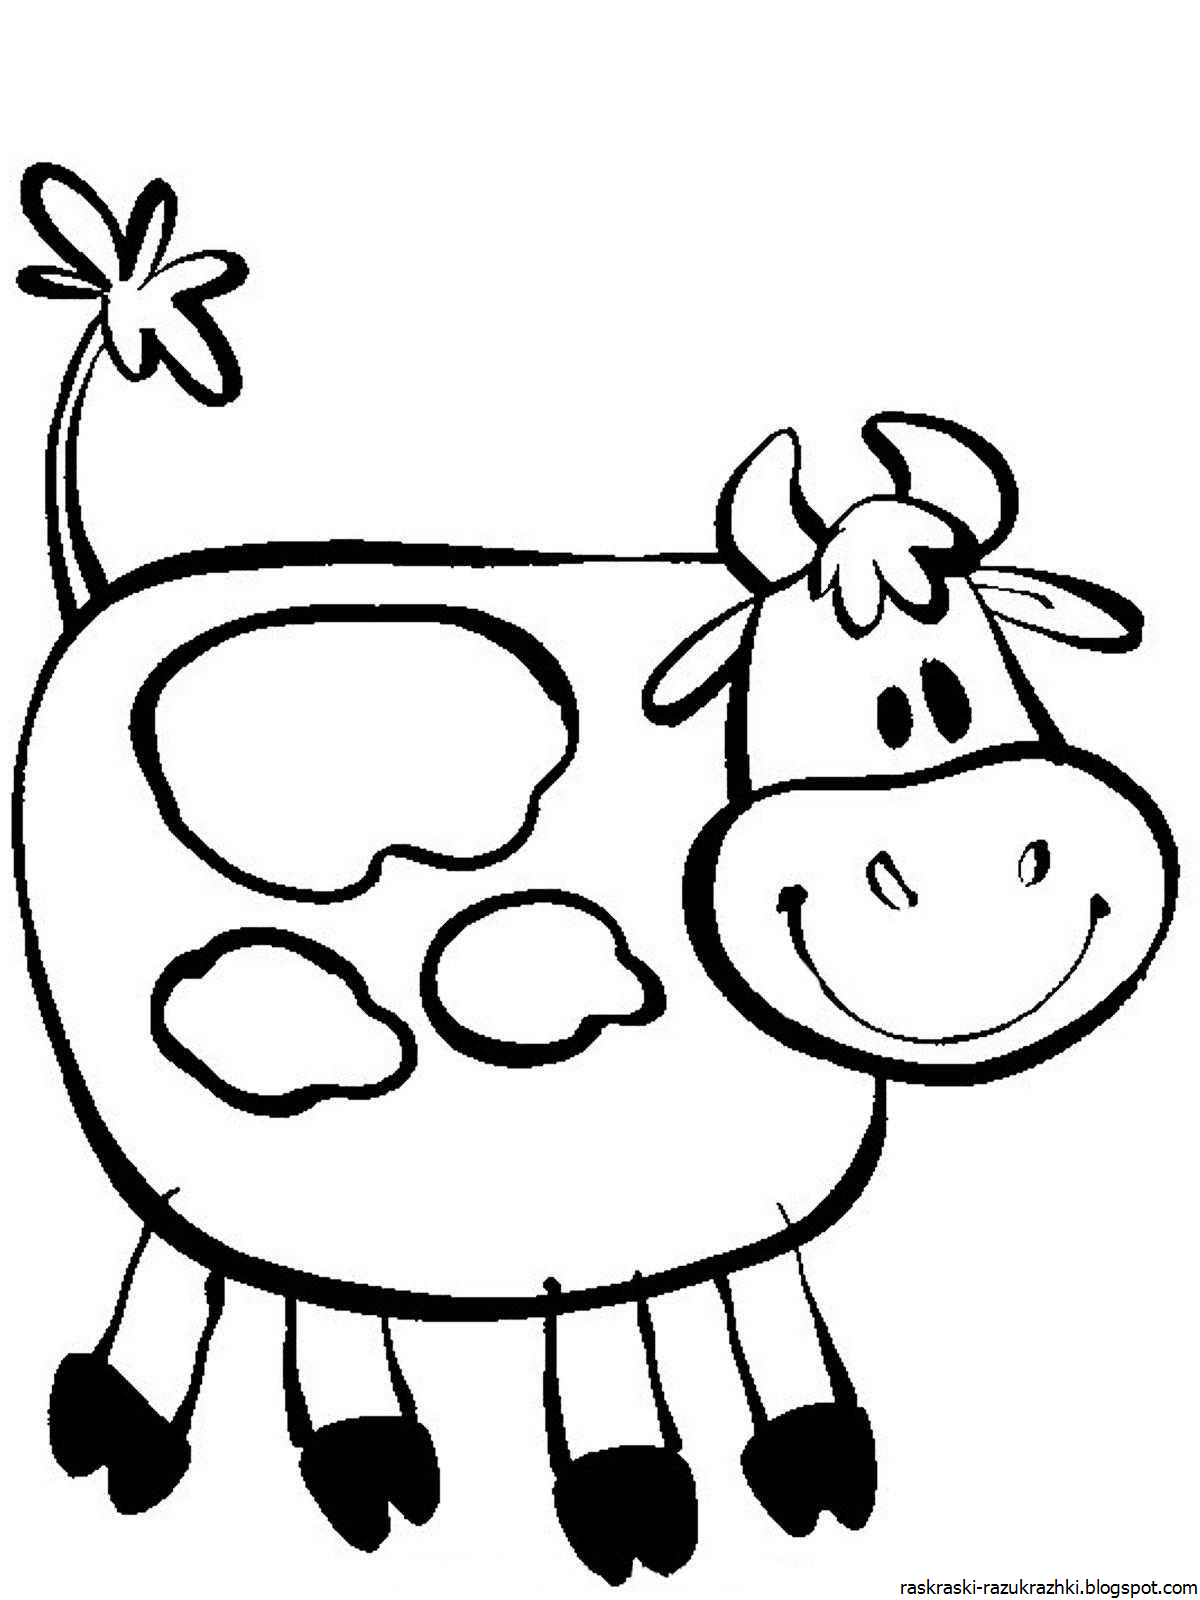 Раскрашивать коров. Раскраска корова. Корова раскраска для детей. Корова раскраска для малышей. Коровка раскраска для детей.